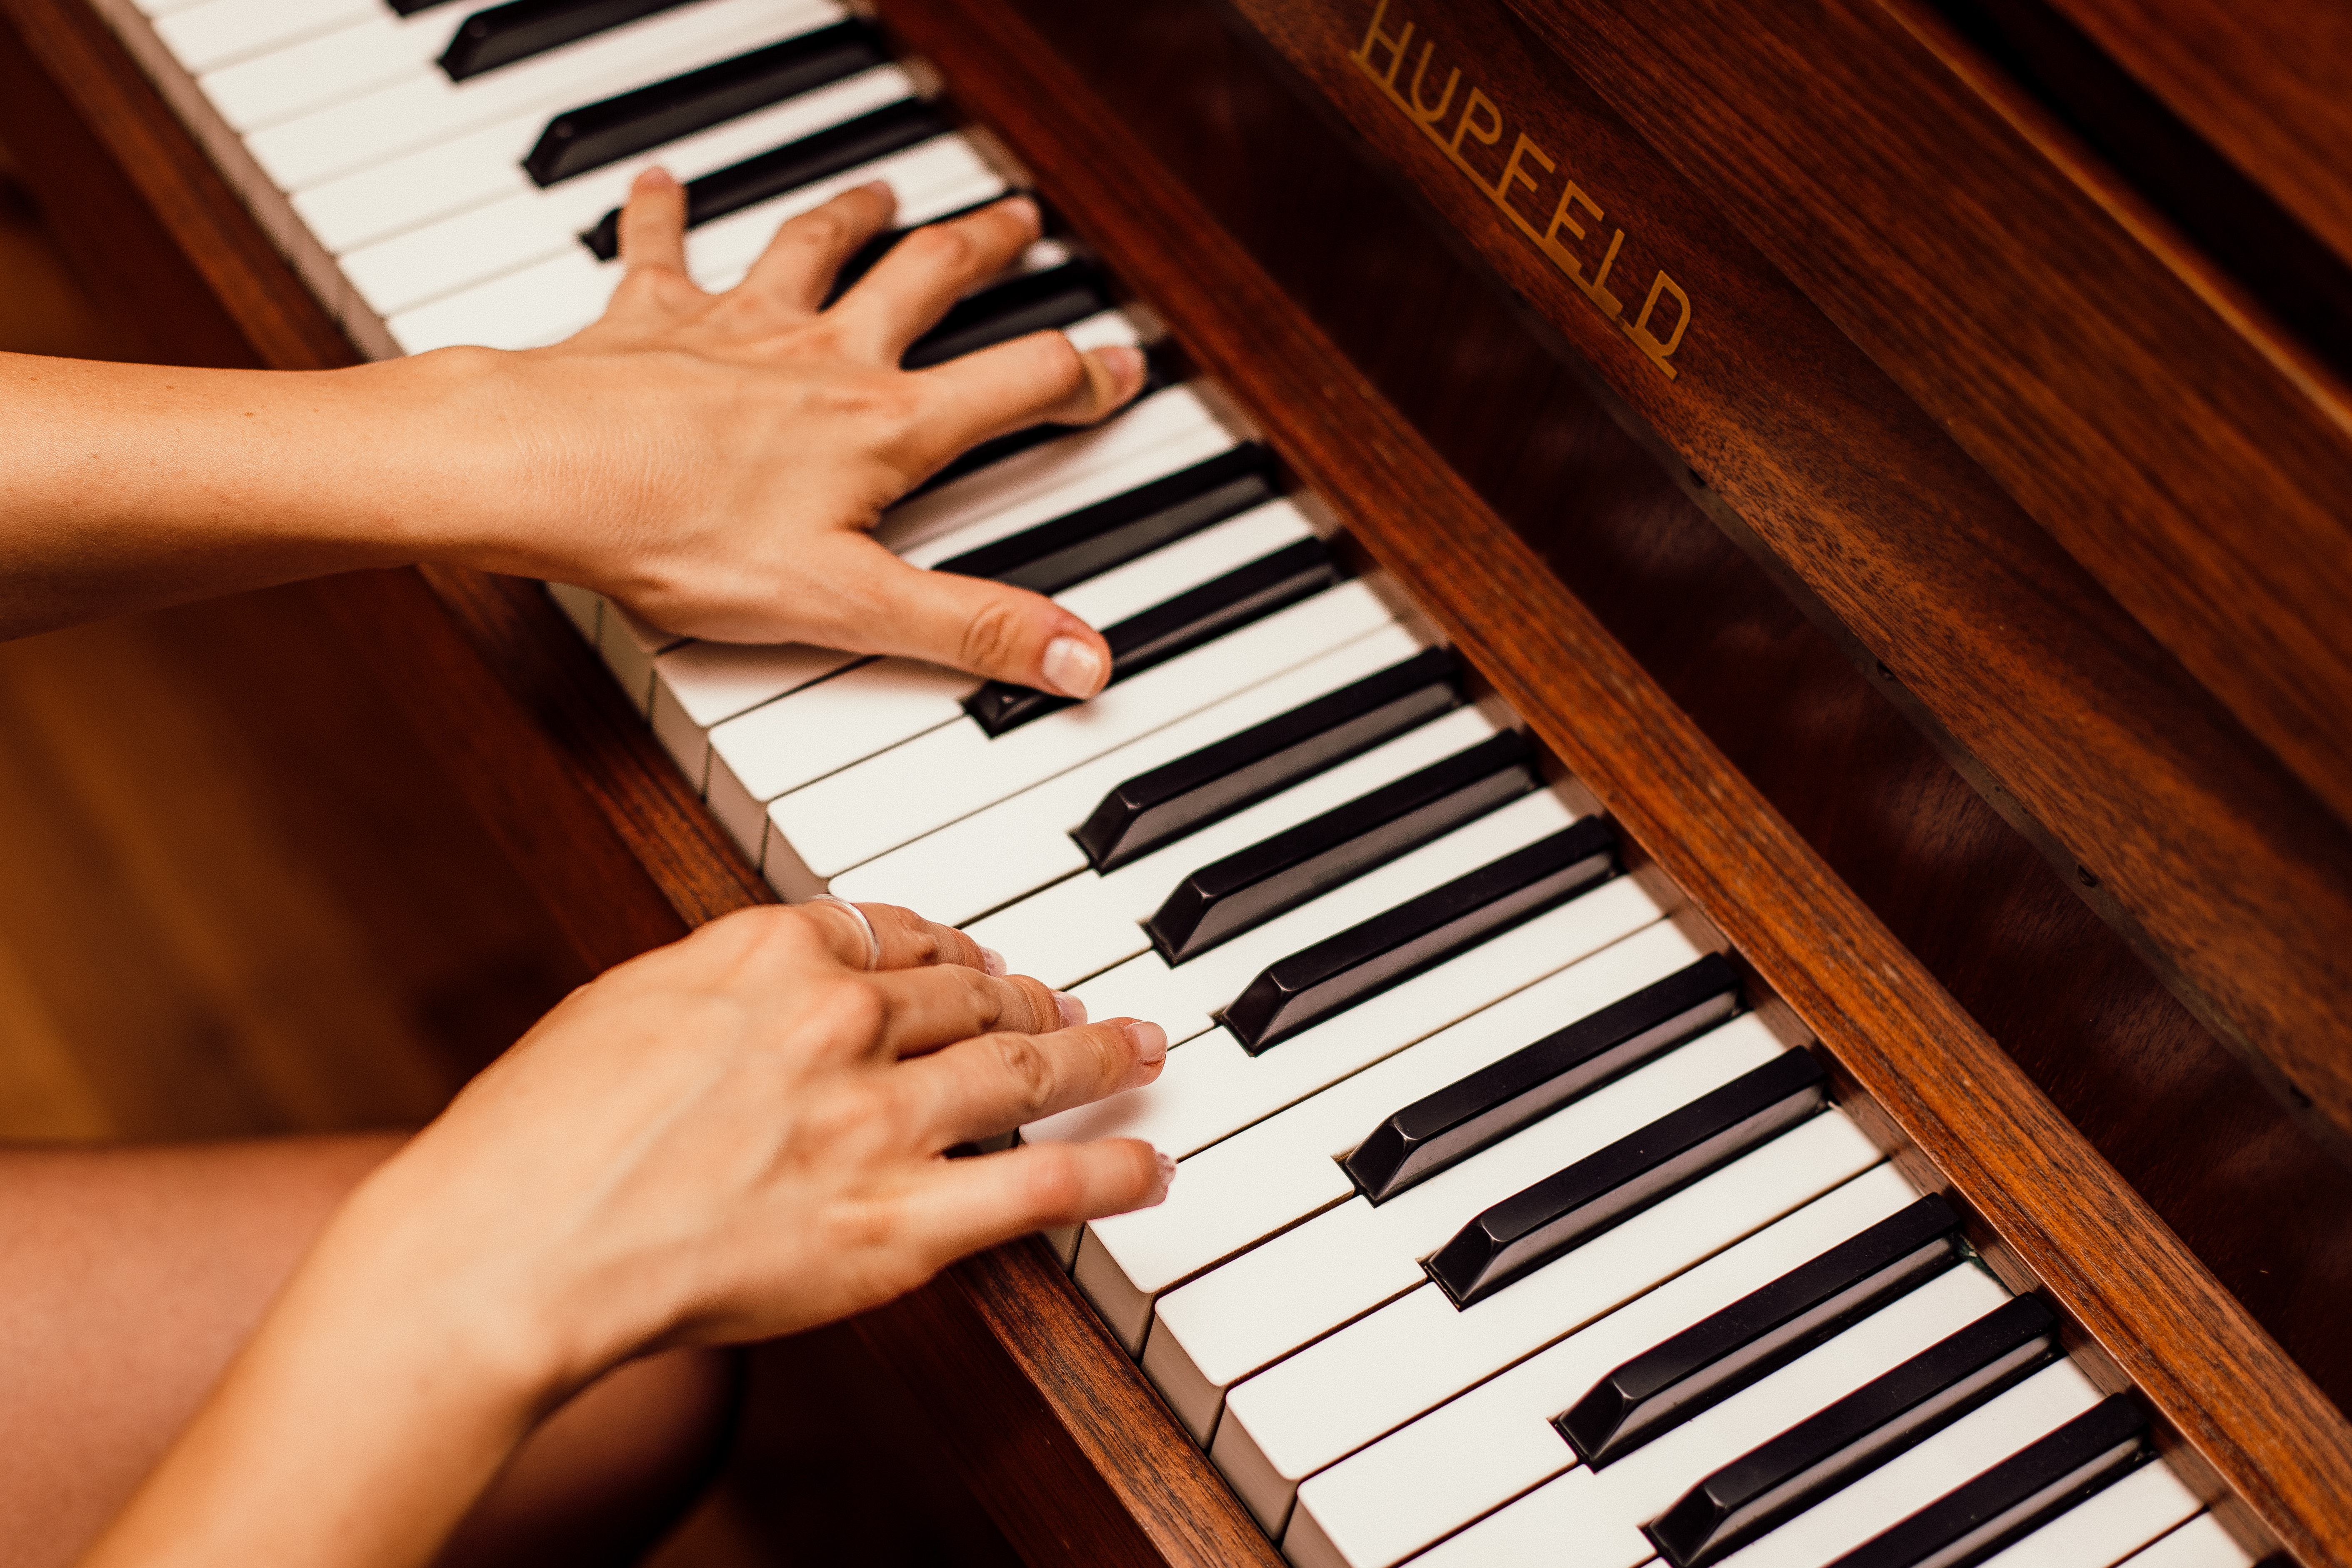 Co je dobré vědět před pořízením piana